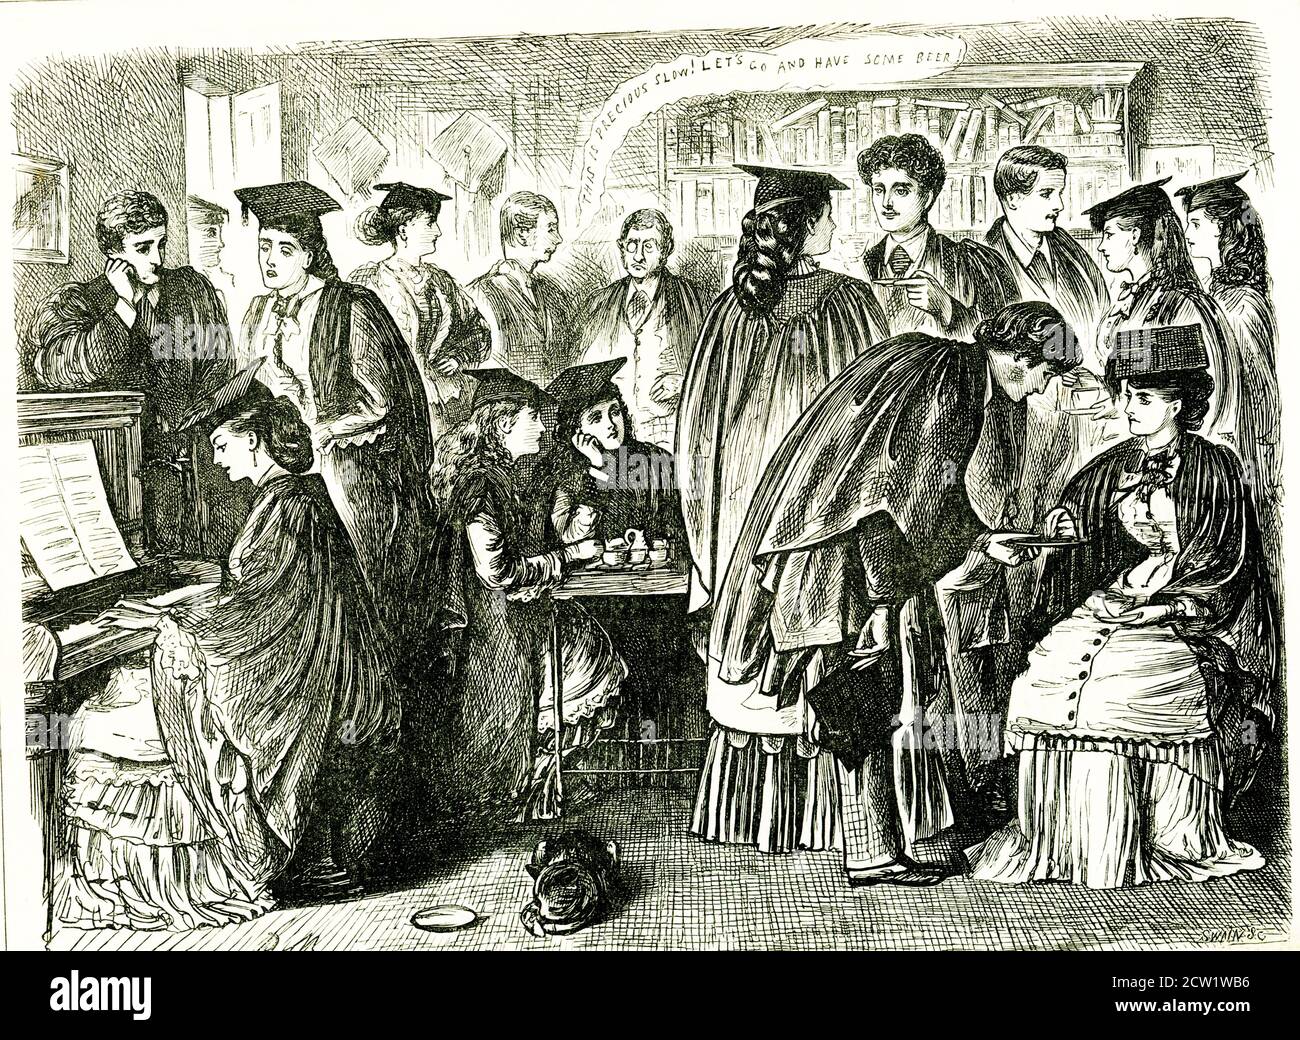 Die Bildunterschrift für diese Illustration lautet: Sweet-Girl Absolventen Afternoon Tea versus Wine. Der Mann im Hintergrund sagt: „das ist kostbar langsam! Lasst uns gehen und ein Bier trinken!“ Es wird vom Punch Almanac für 1873 genommen. Punch, oder The London Charivari, war eine britische Wochenzeitschrift für Humor und Satire, die 1841 von Henry Mayhew und dem Holzstecher Ebenezer Landells gegründet wurde. Historisch war es in den 1840er und 1850er Jahren am einflussreichsten, als es half, den Begriff "Cartoon" in seinem modernen Sinne als humorvolle Illustration zu prägen. Stockfoto